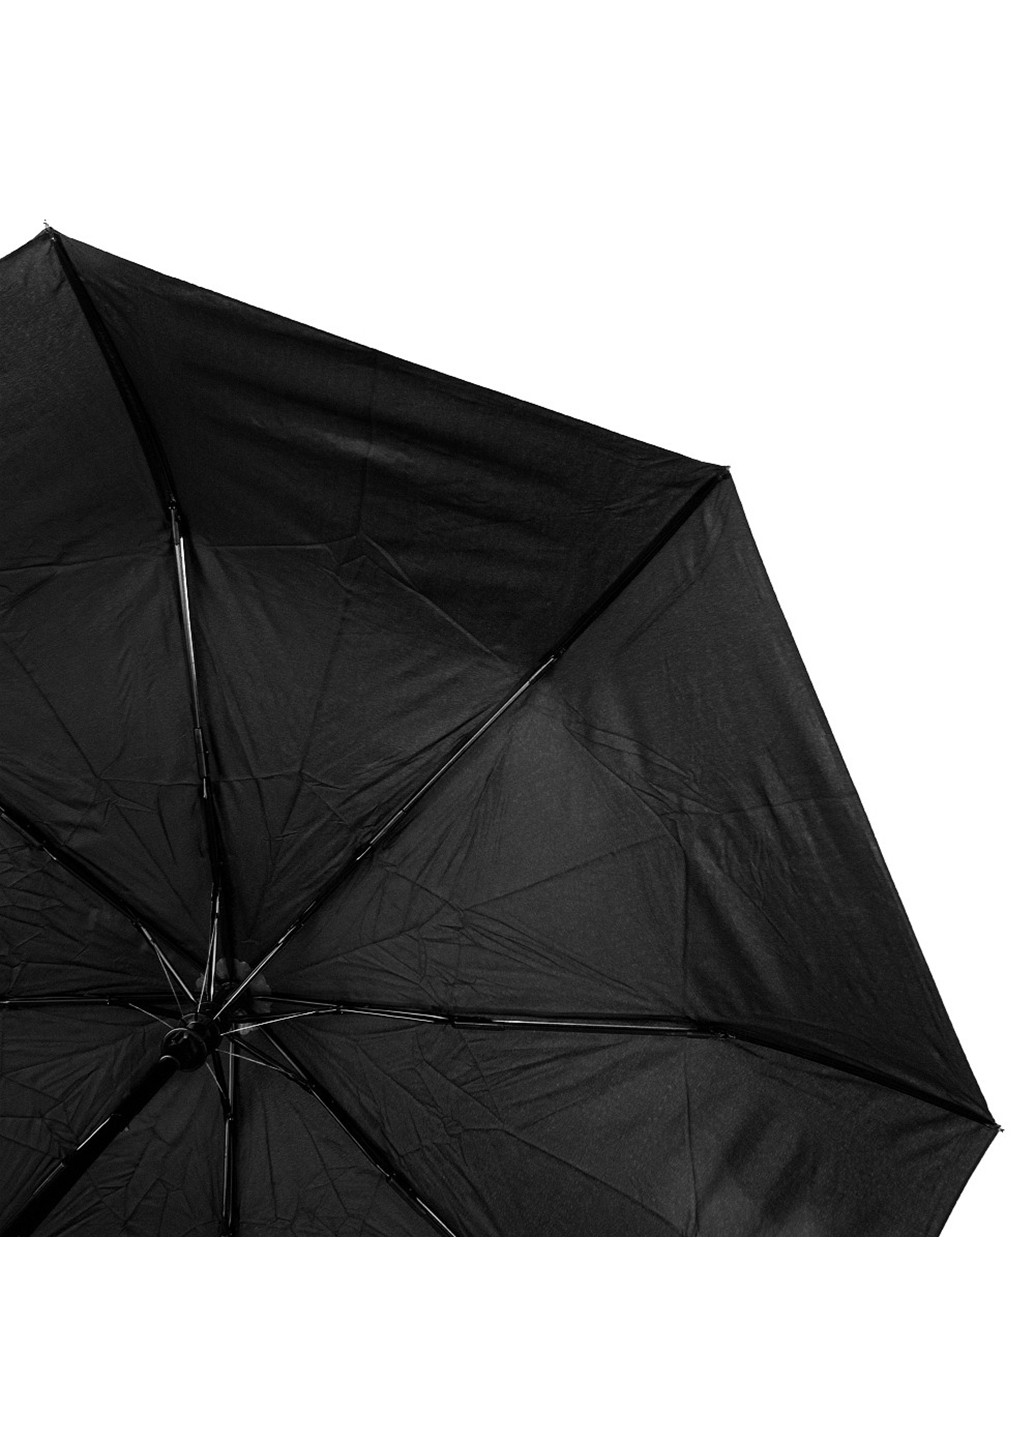 Жіноча складна парасолька напівавтомат 95 см Eterno (255709227)